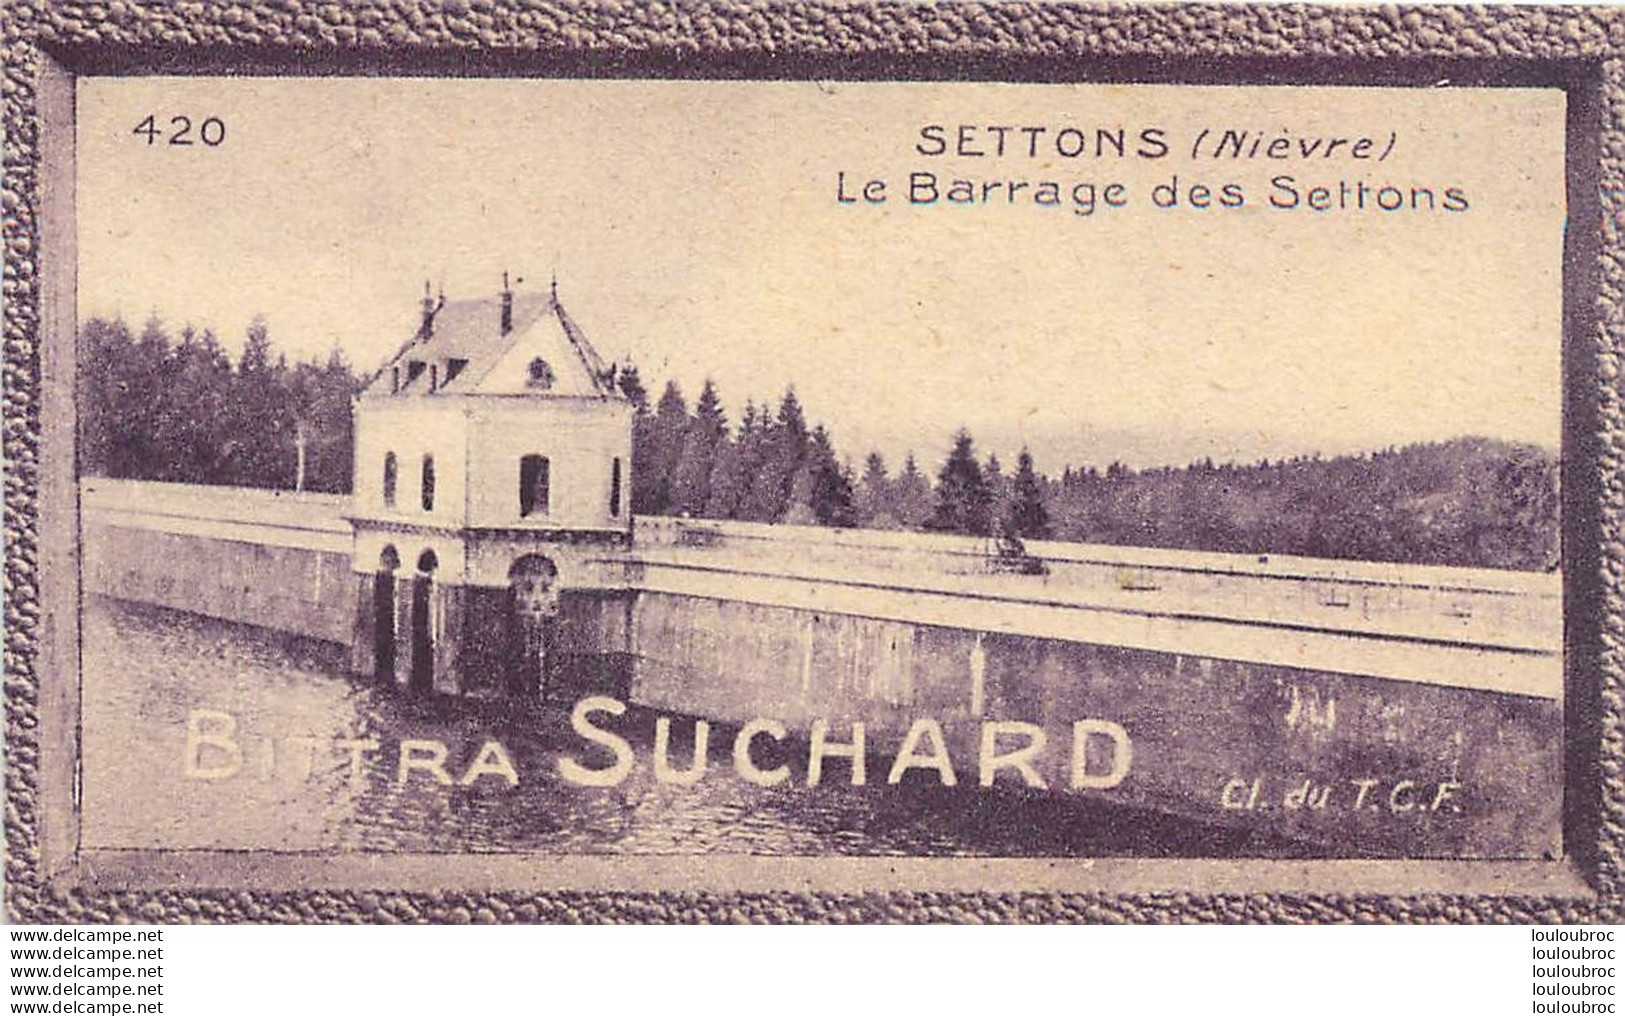 CHROMO BITTRA SUCHARD LE BARRAGE DES SETTONS CL. DU T.C.F. - Suchard